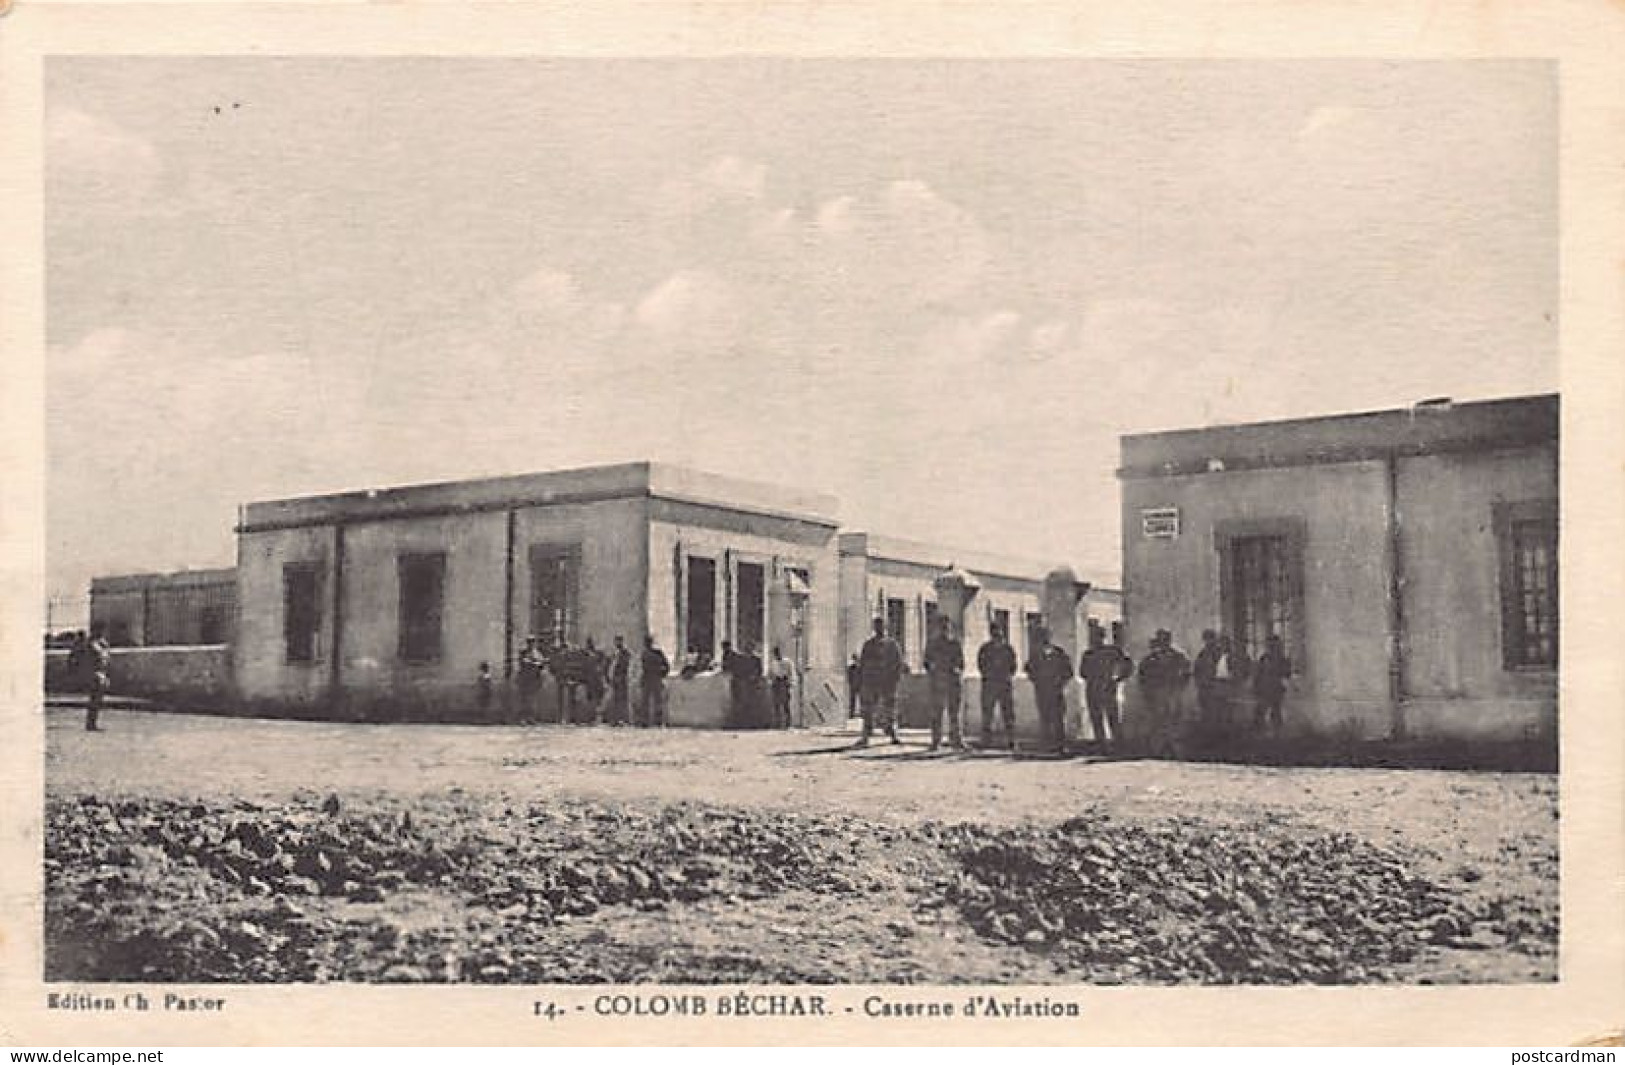 Algérie - COLOMB BÉCHAR - Caserne D'aviation - Ed. Ch. Pastor 14 - Bechar (Colomb Béchar)